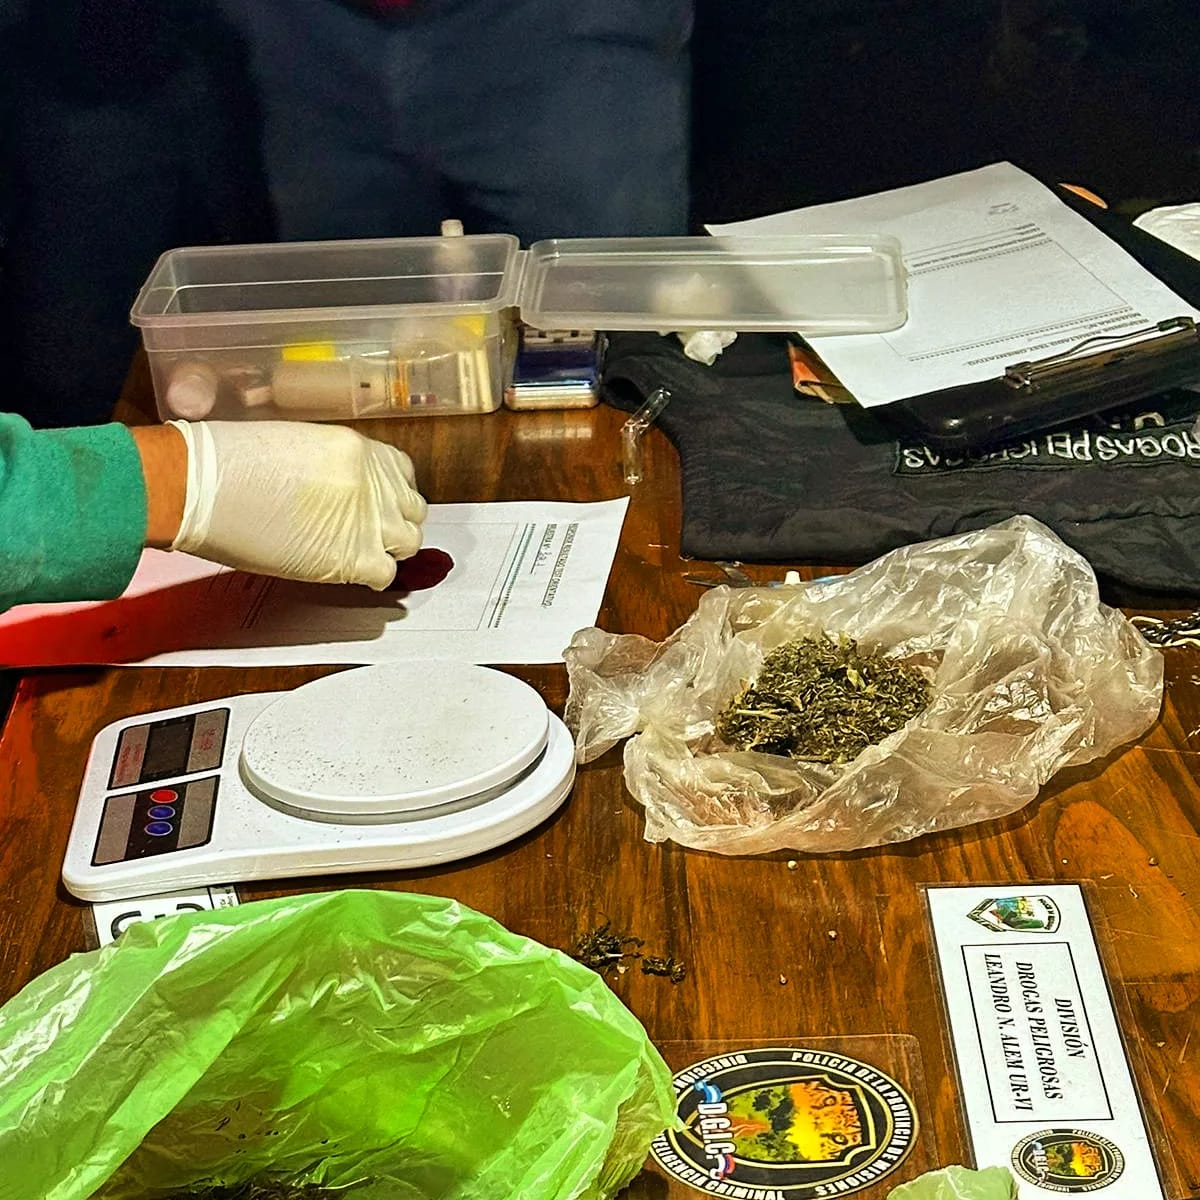 Desbarataron un "narcokiosco" en San Javier y ya son 50 los puntos de venta de drogas desarticulados por la Policía imagen-59